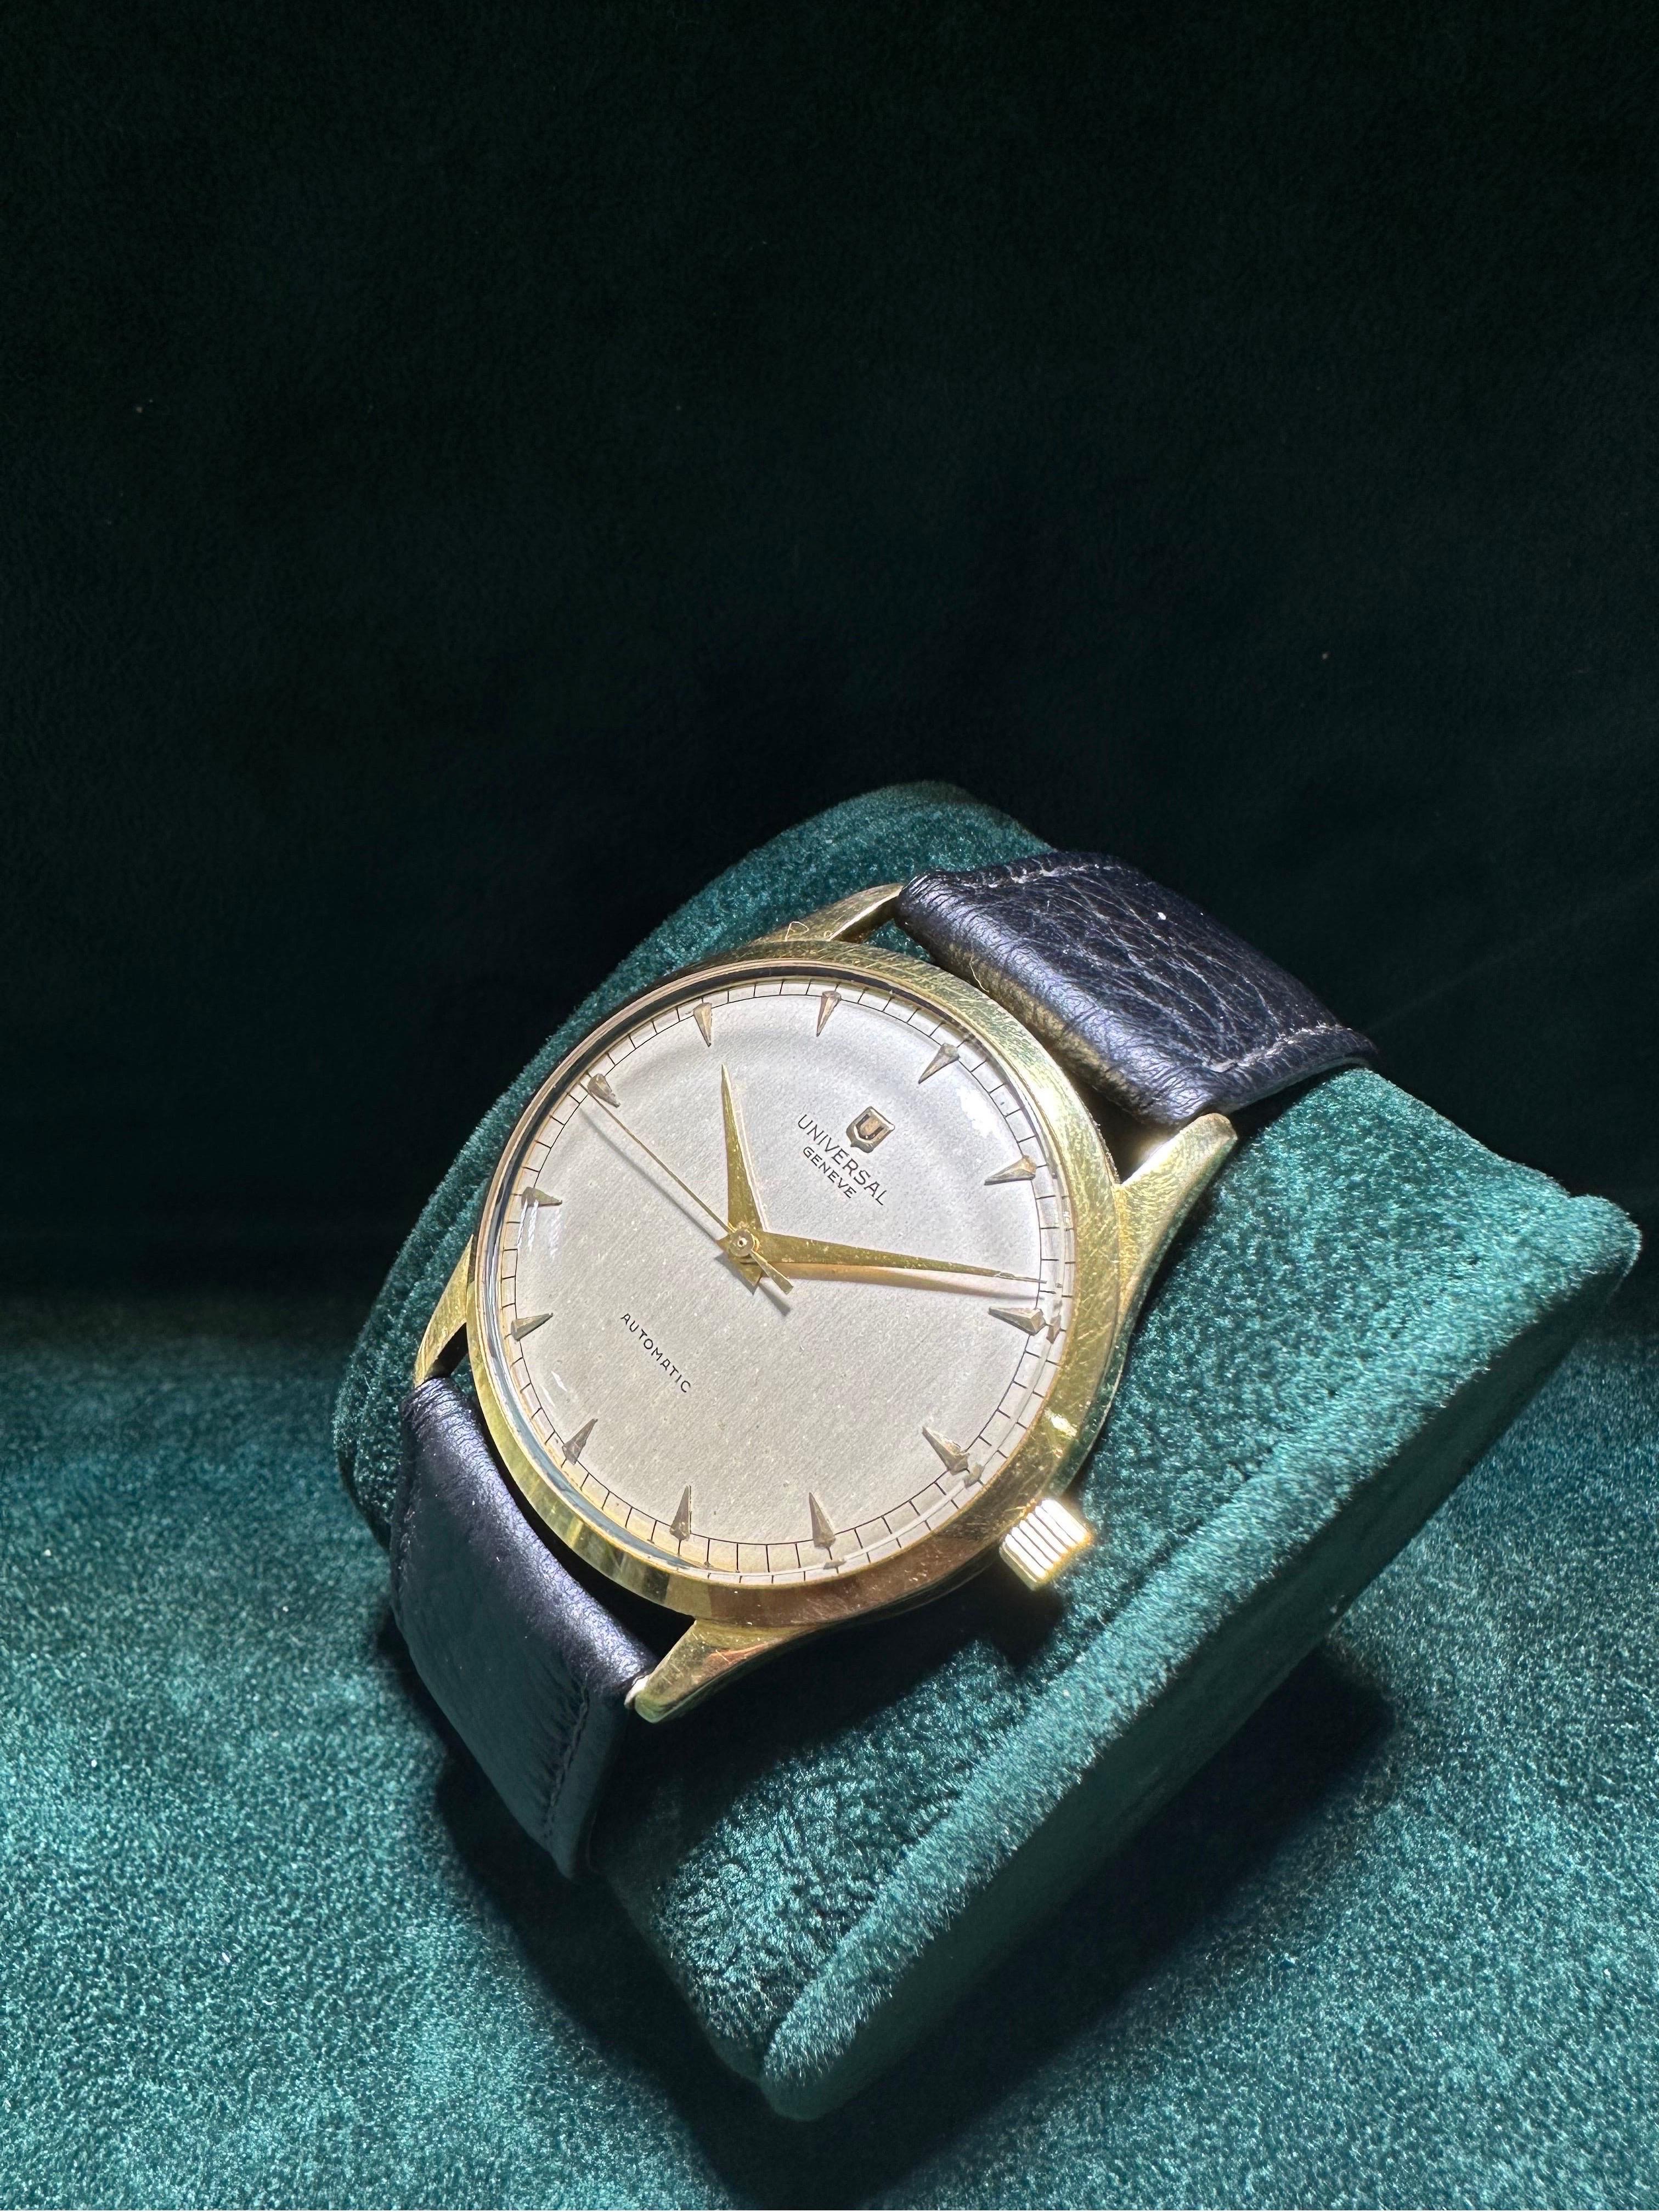 Très belle montre Universal Geneve fabriquée vers 1950. La montre est équipée d'un mouvement automatique Bumer, précurseur de la montre automatique que nous connaissons aujourd'hui. Ce mouvement a été beaucoup utilisé par Omega, Jaeger-LeCoultre et